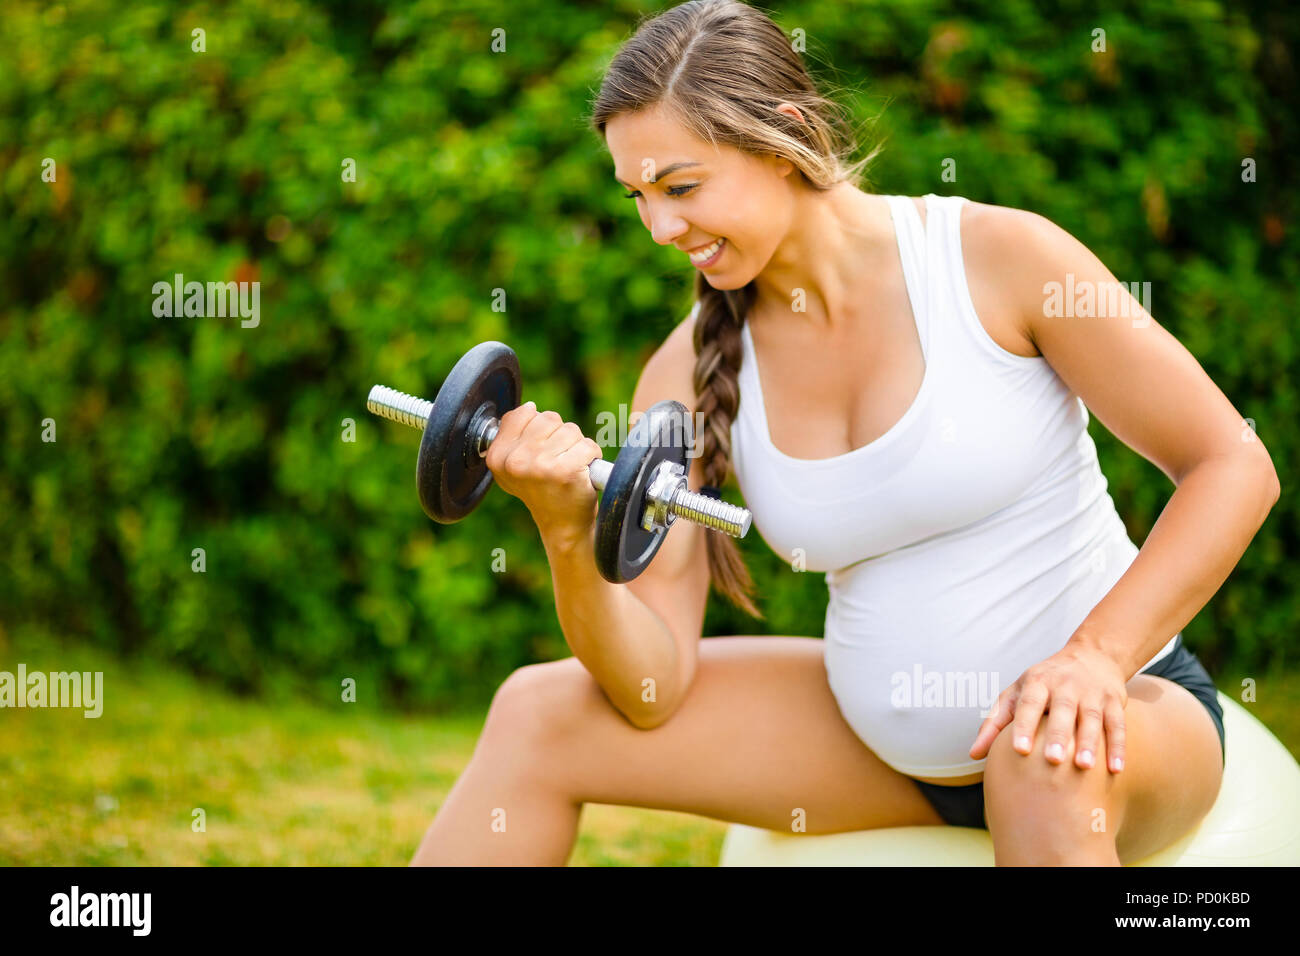 Schwangere Frau Hanteln beim Sitzen auf Übung Kugel Stockfoto